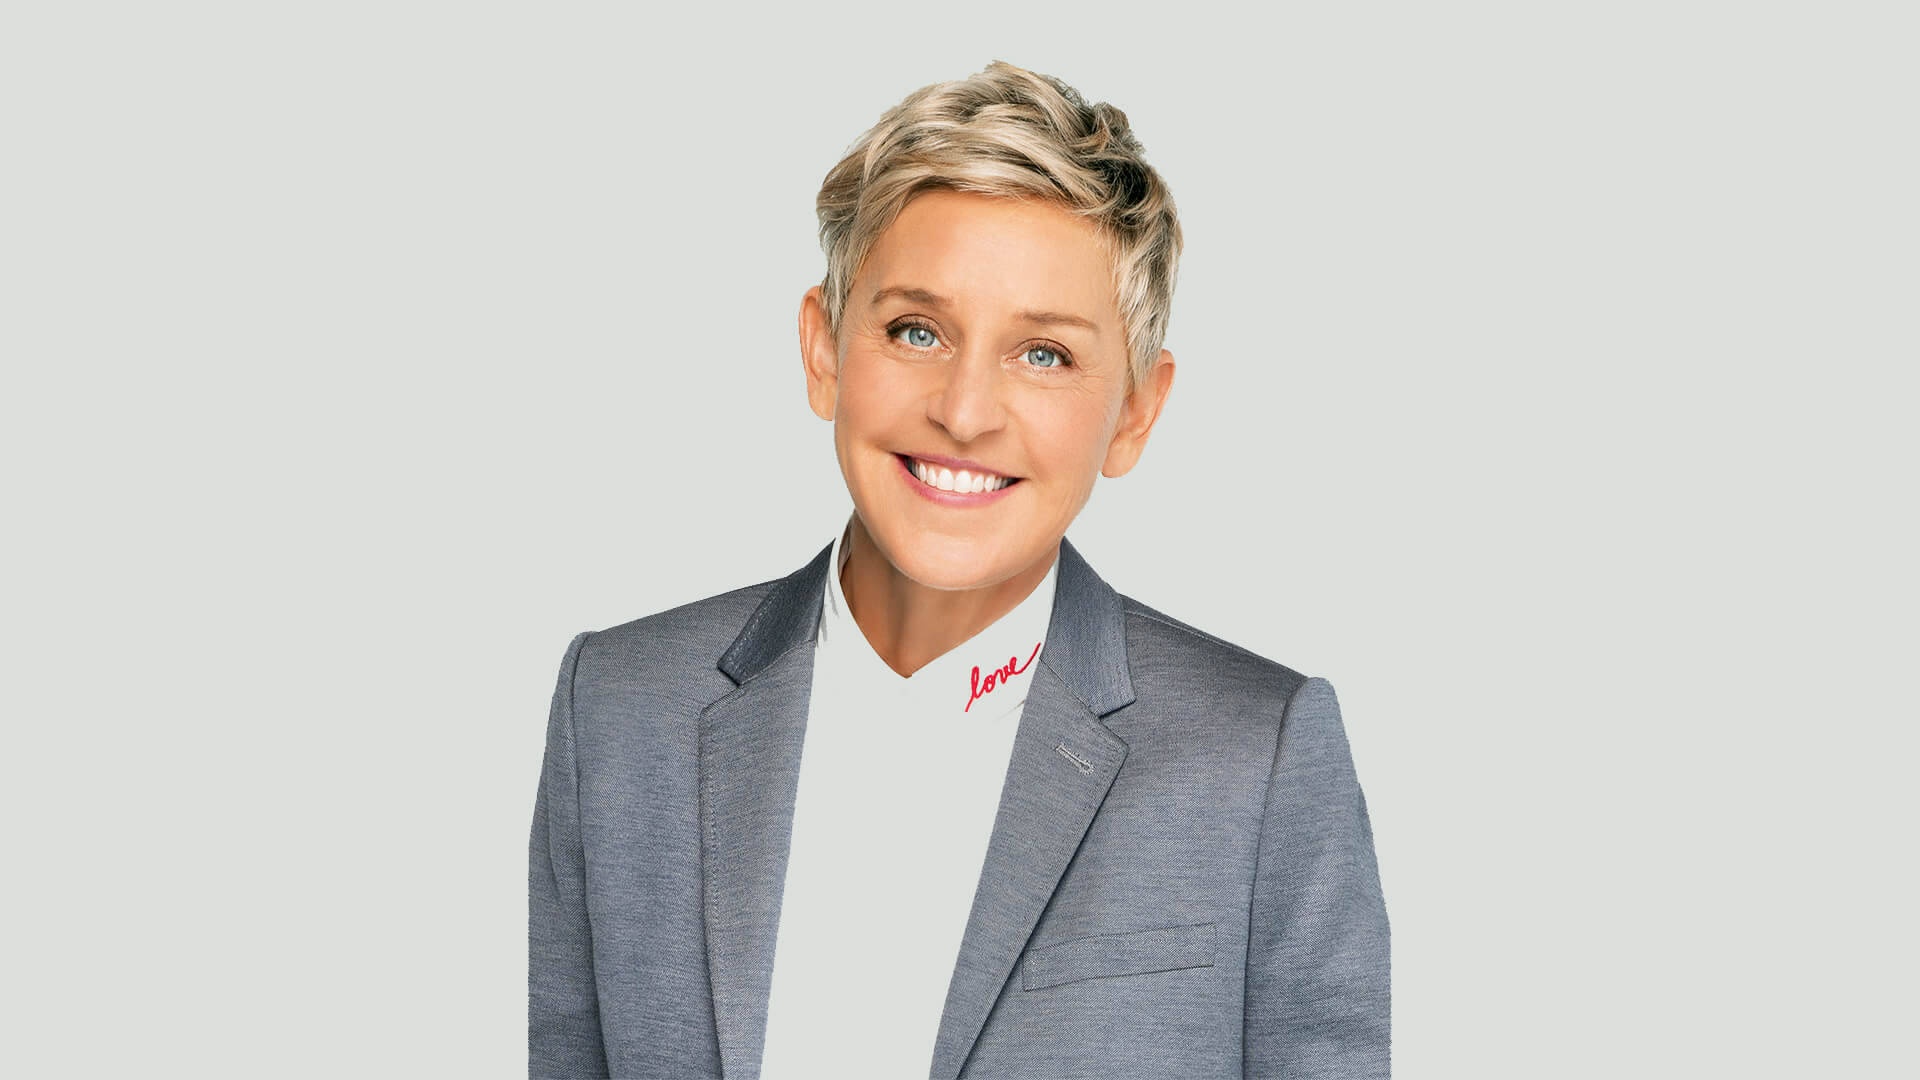 Ellen Degeneres Light Grey Suit Background